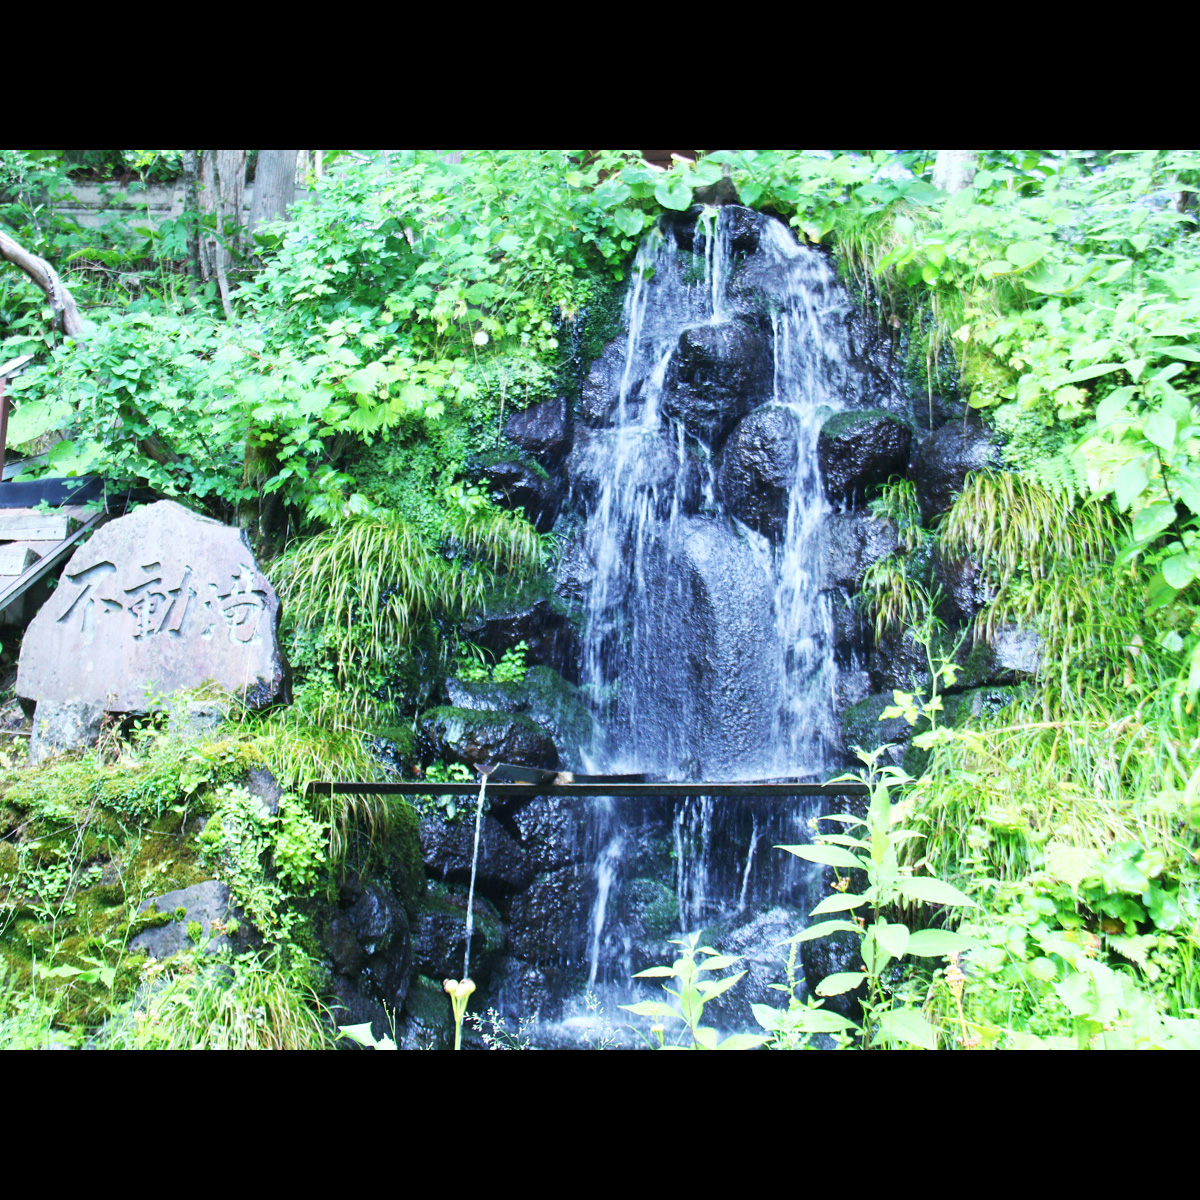 戸隠神社宝光社の麓から湧き出る不動滝は本館の宝です。